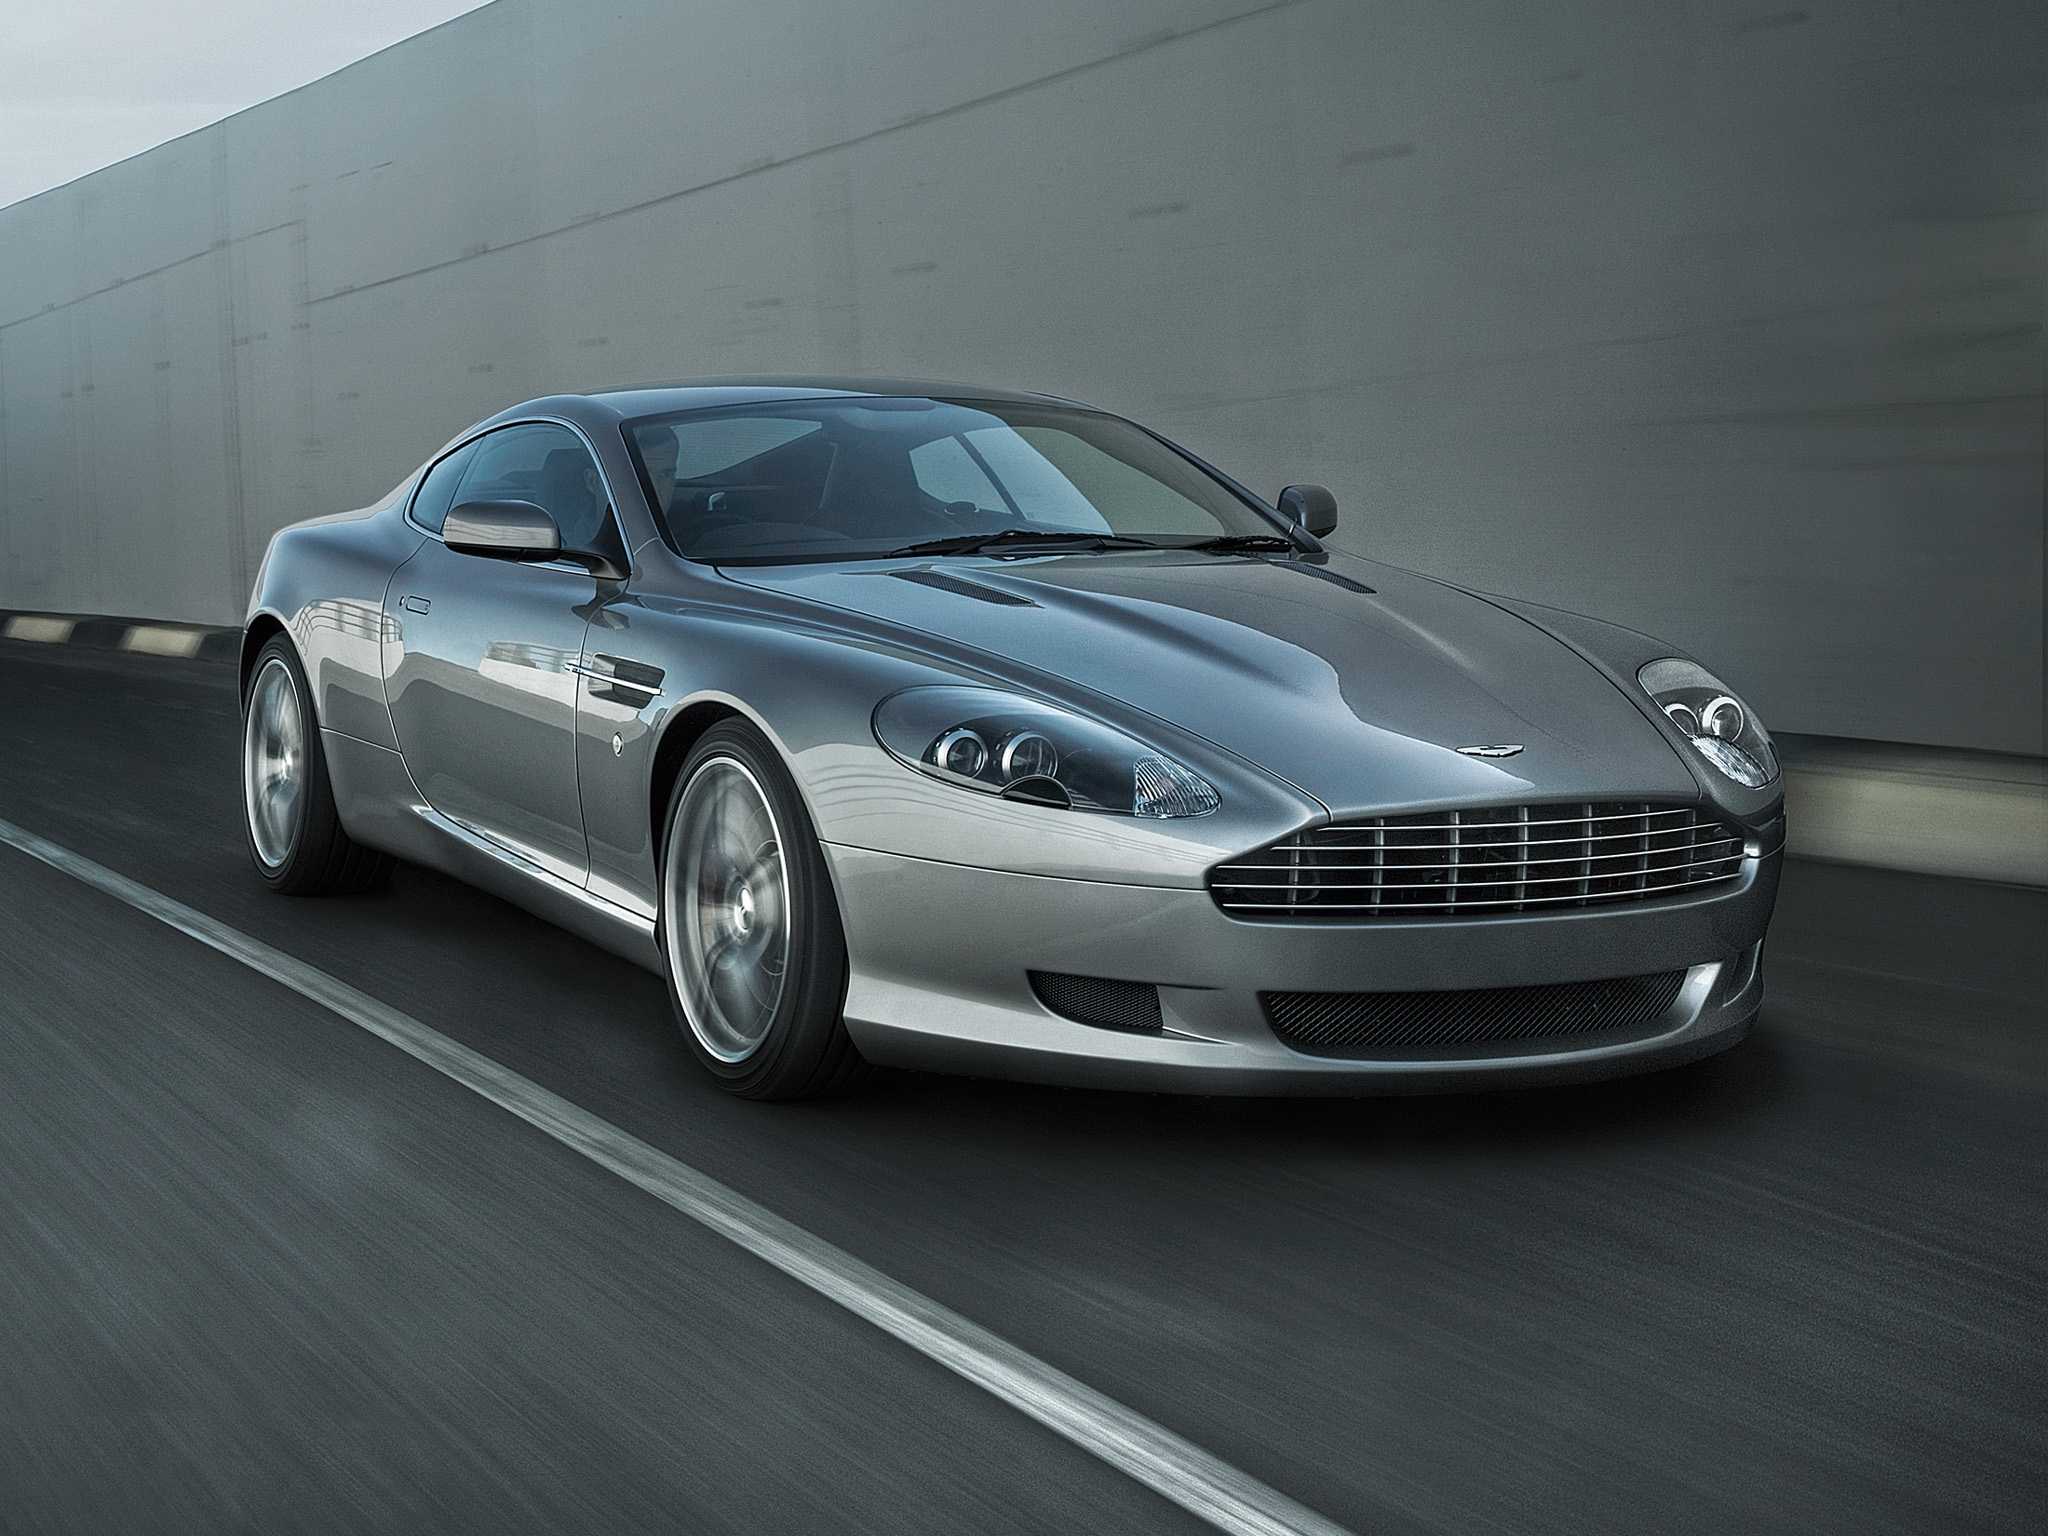 Aston martin: поколения, модельный ряд по годам выпуска, история, кузова, фото моделей на carsweek